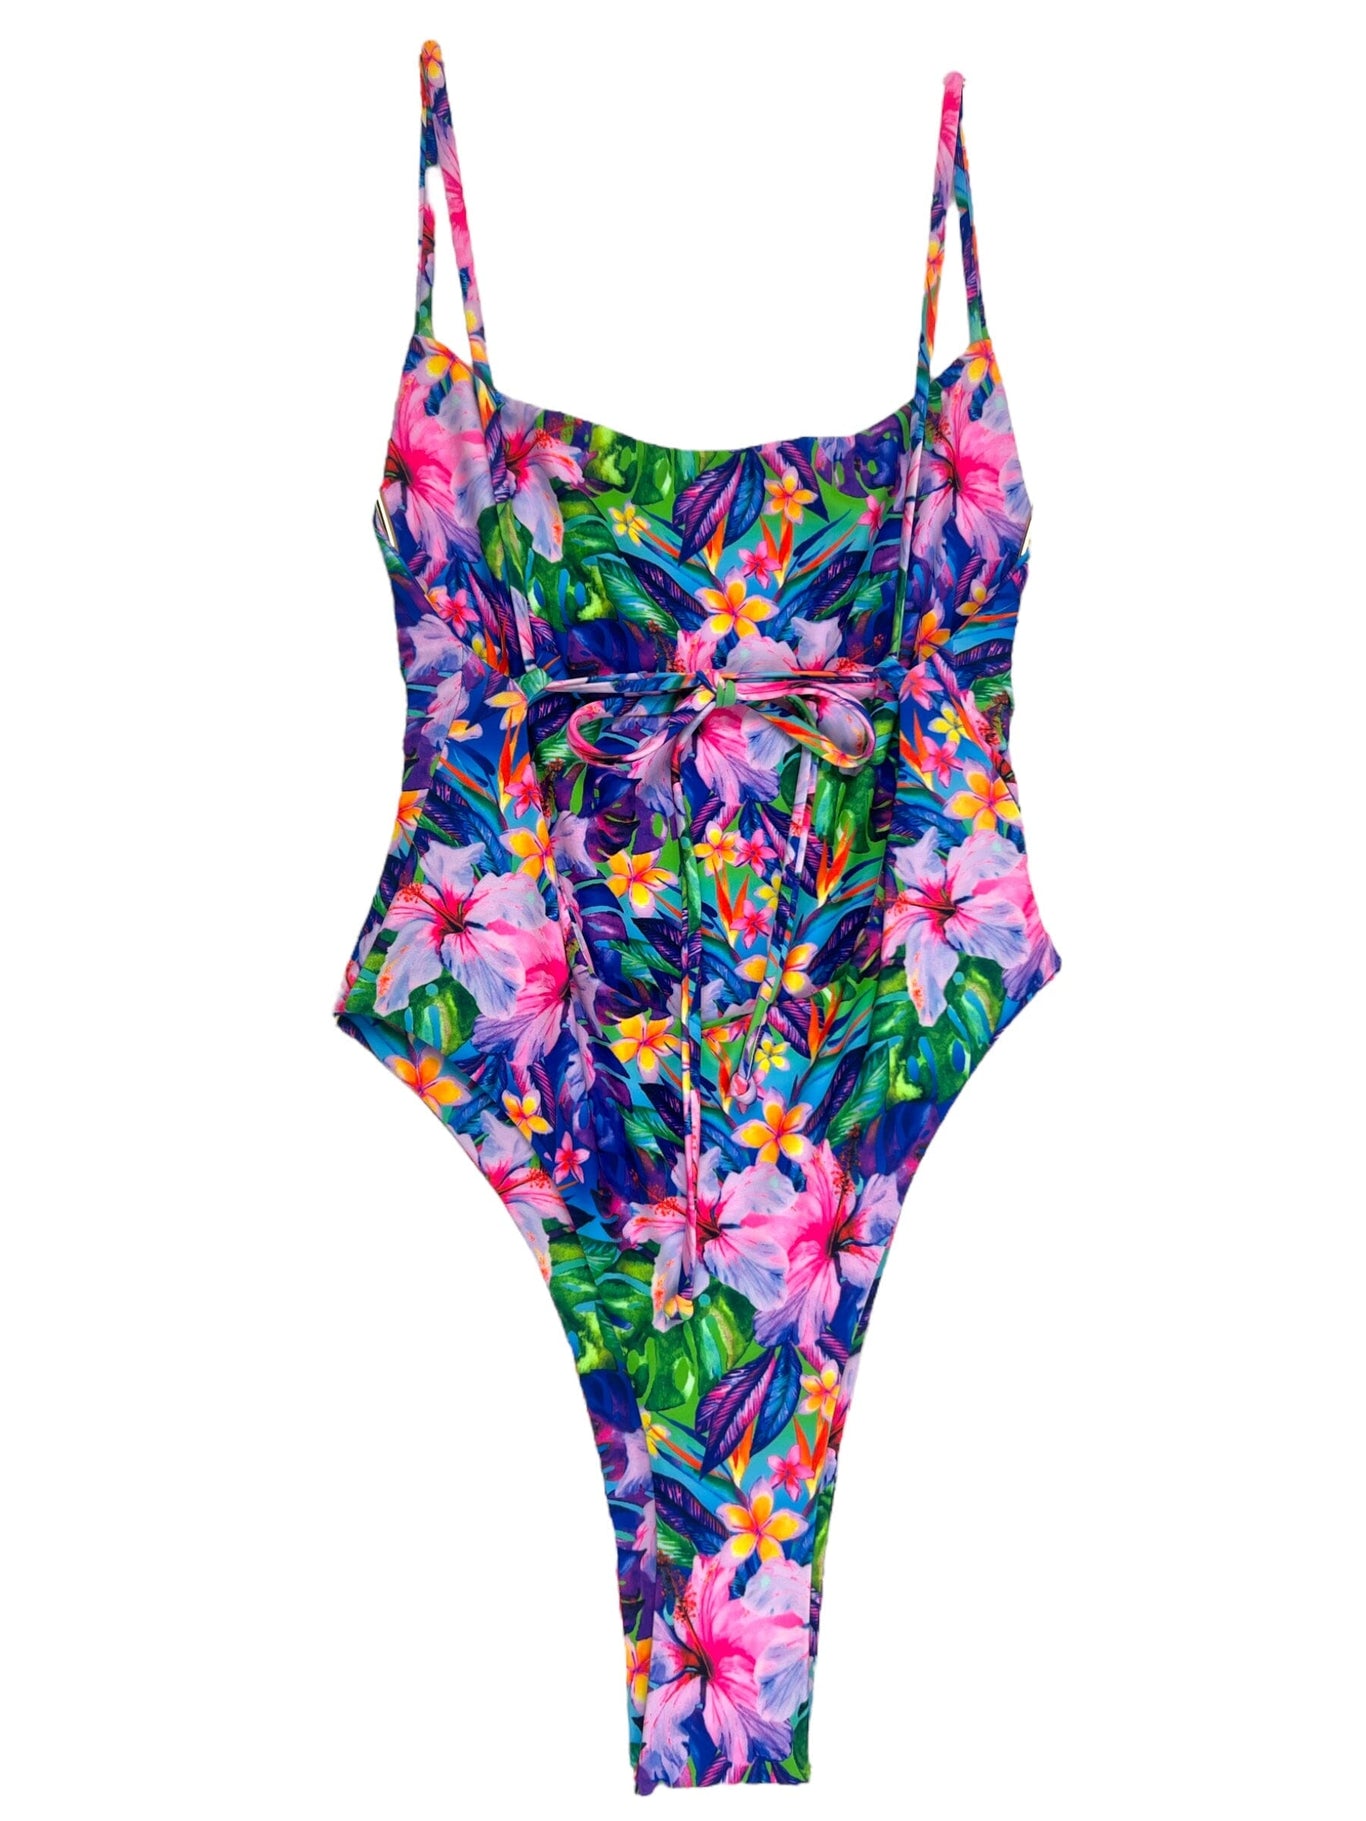 TROPICANA ONE PIECE - Berry Beachy Swimwear